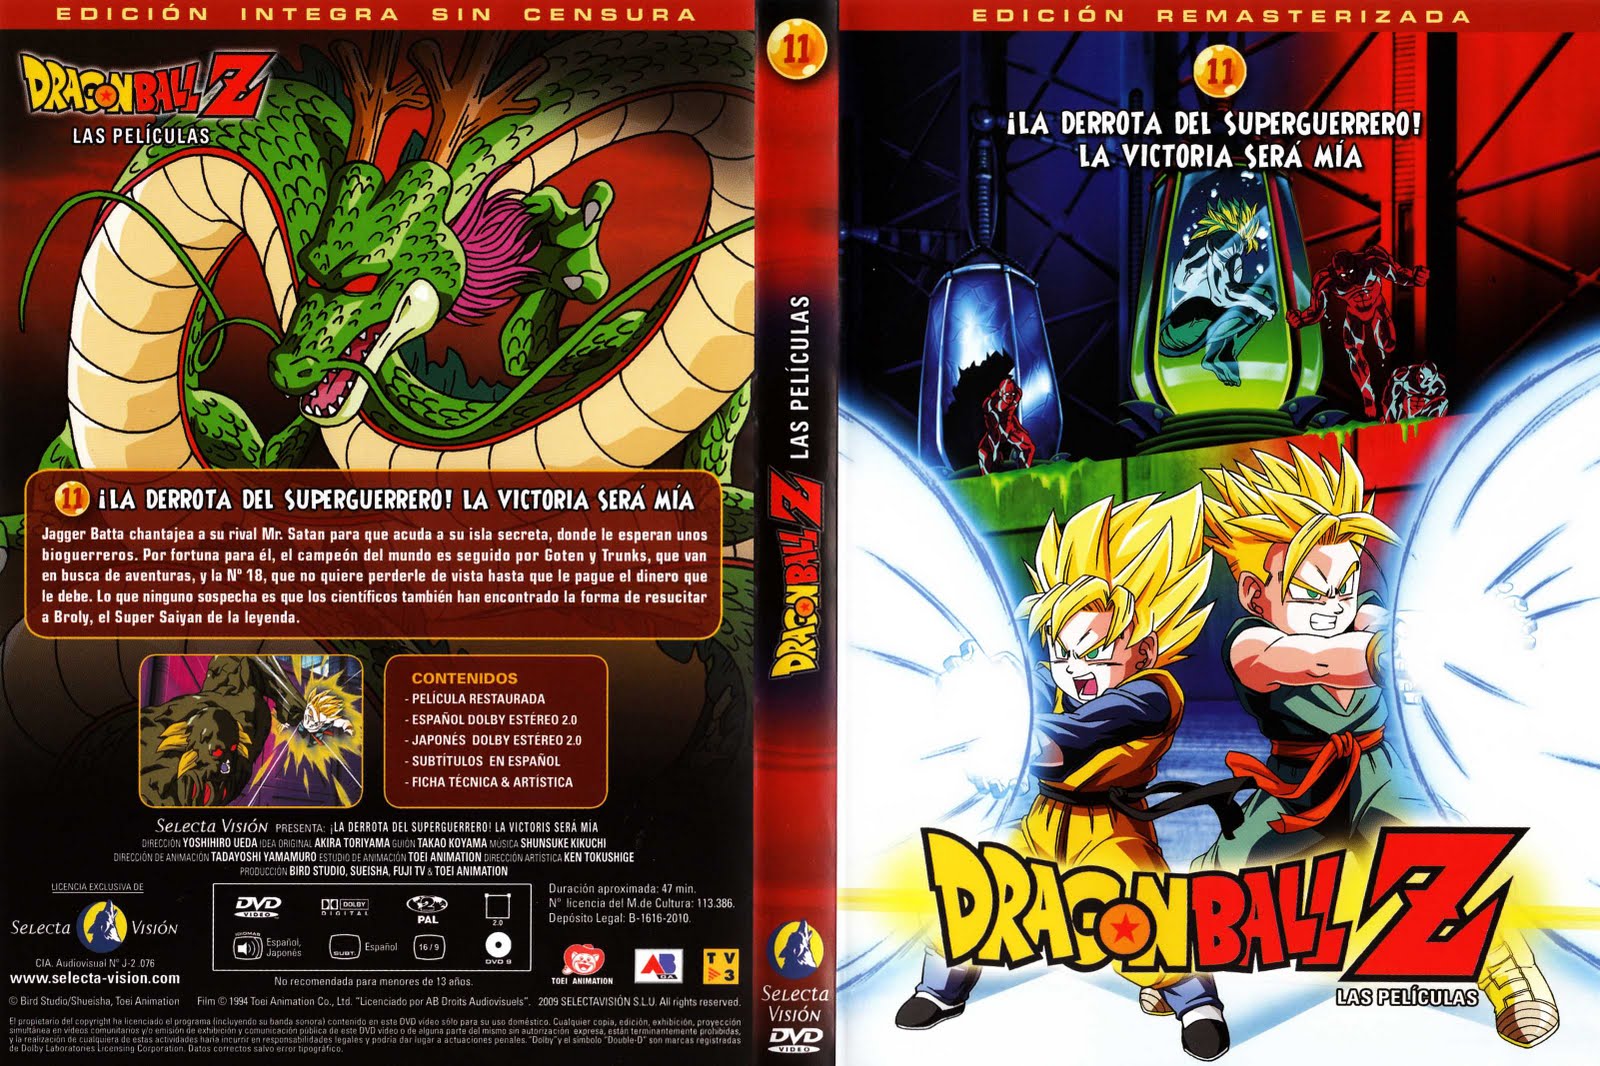 11-El_combate_definitivo - [DD] Dragon Ball Z Película 11 El Combate Final - Anime Ligero [Descargas]